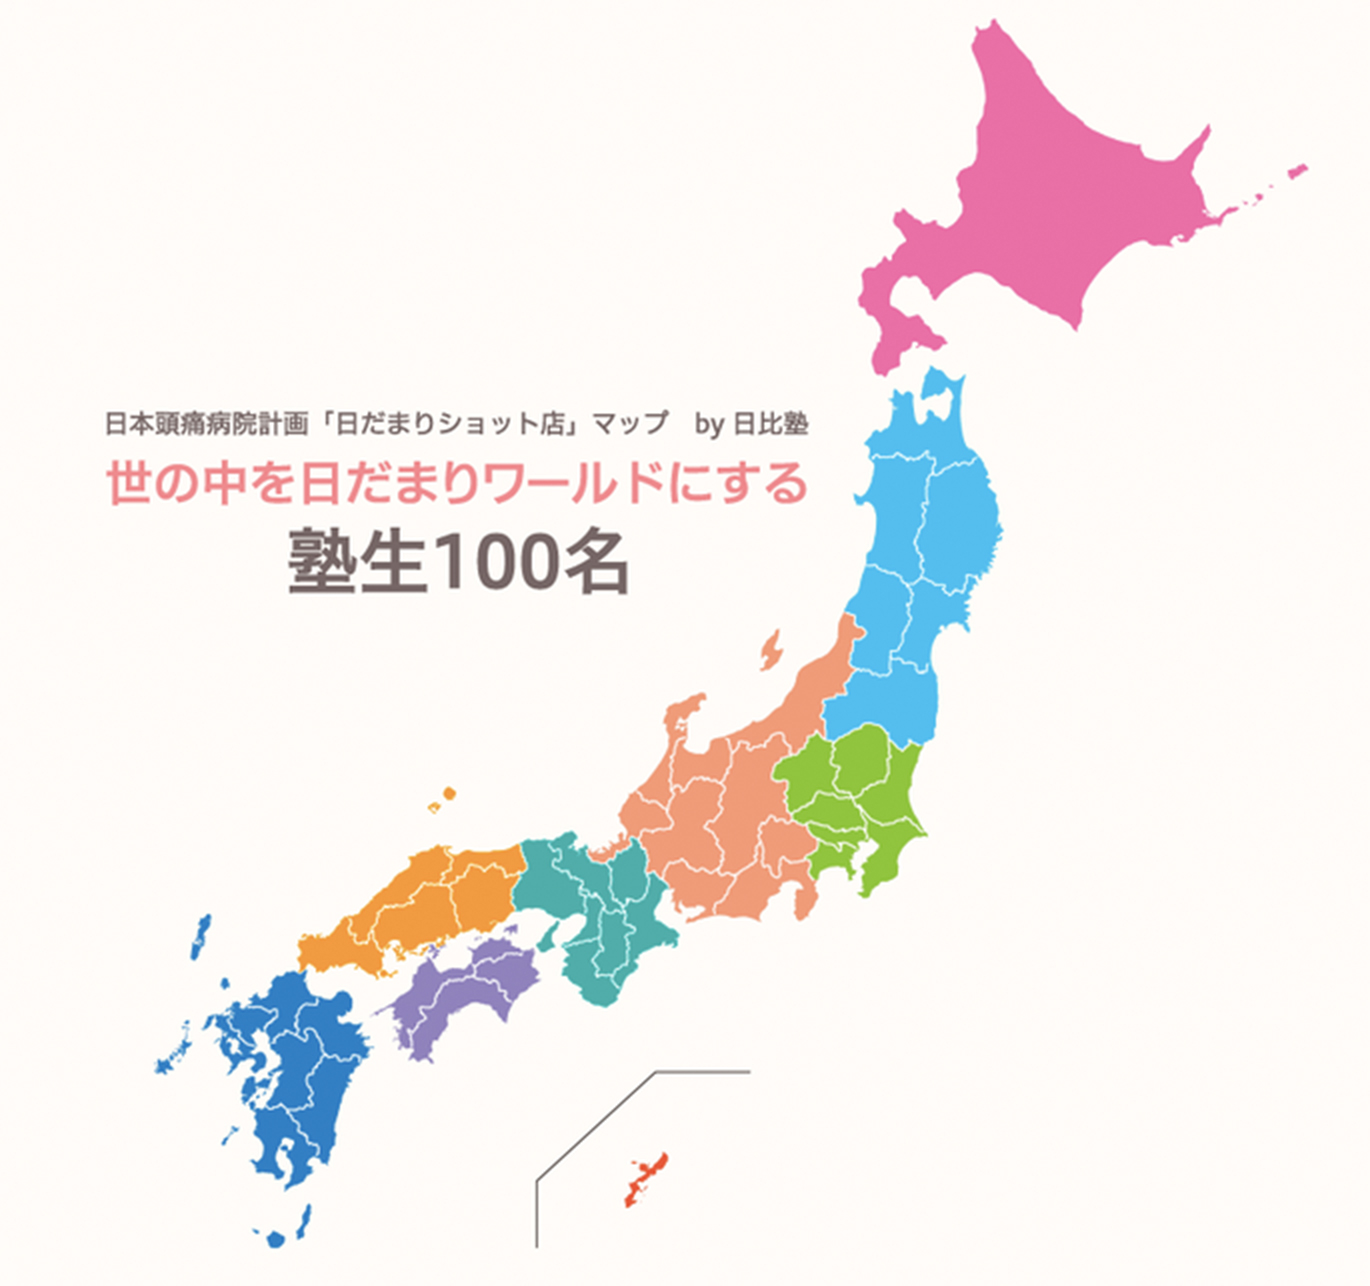 日本頭痛病院計画「日だまりショット店」マップ by頭痛セラピー協会 世の中を日だまりワールドにする 塾生100名